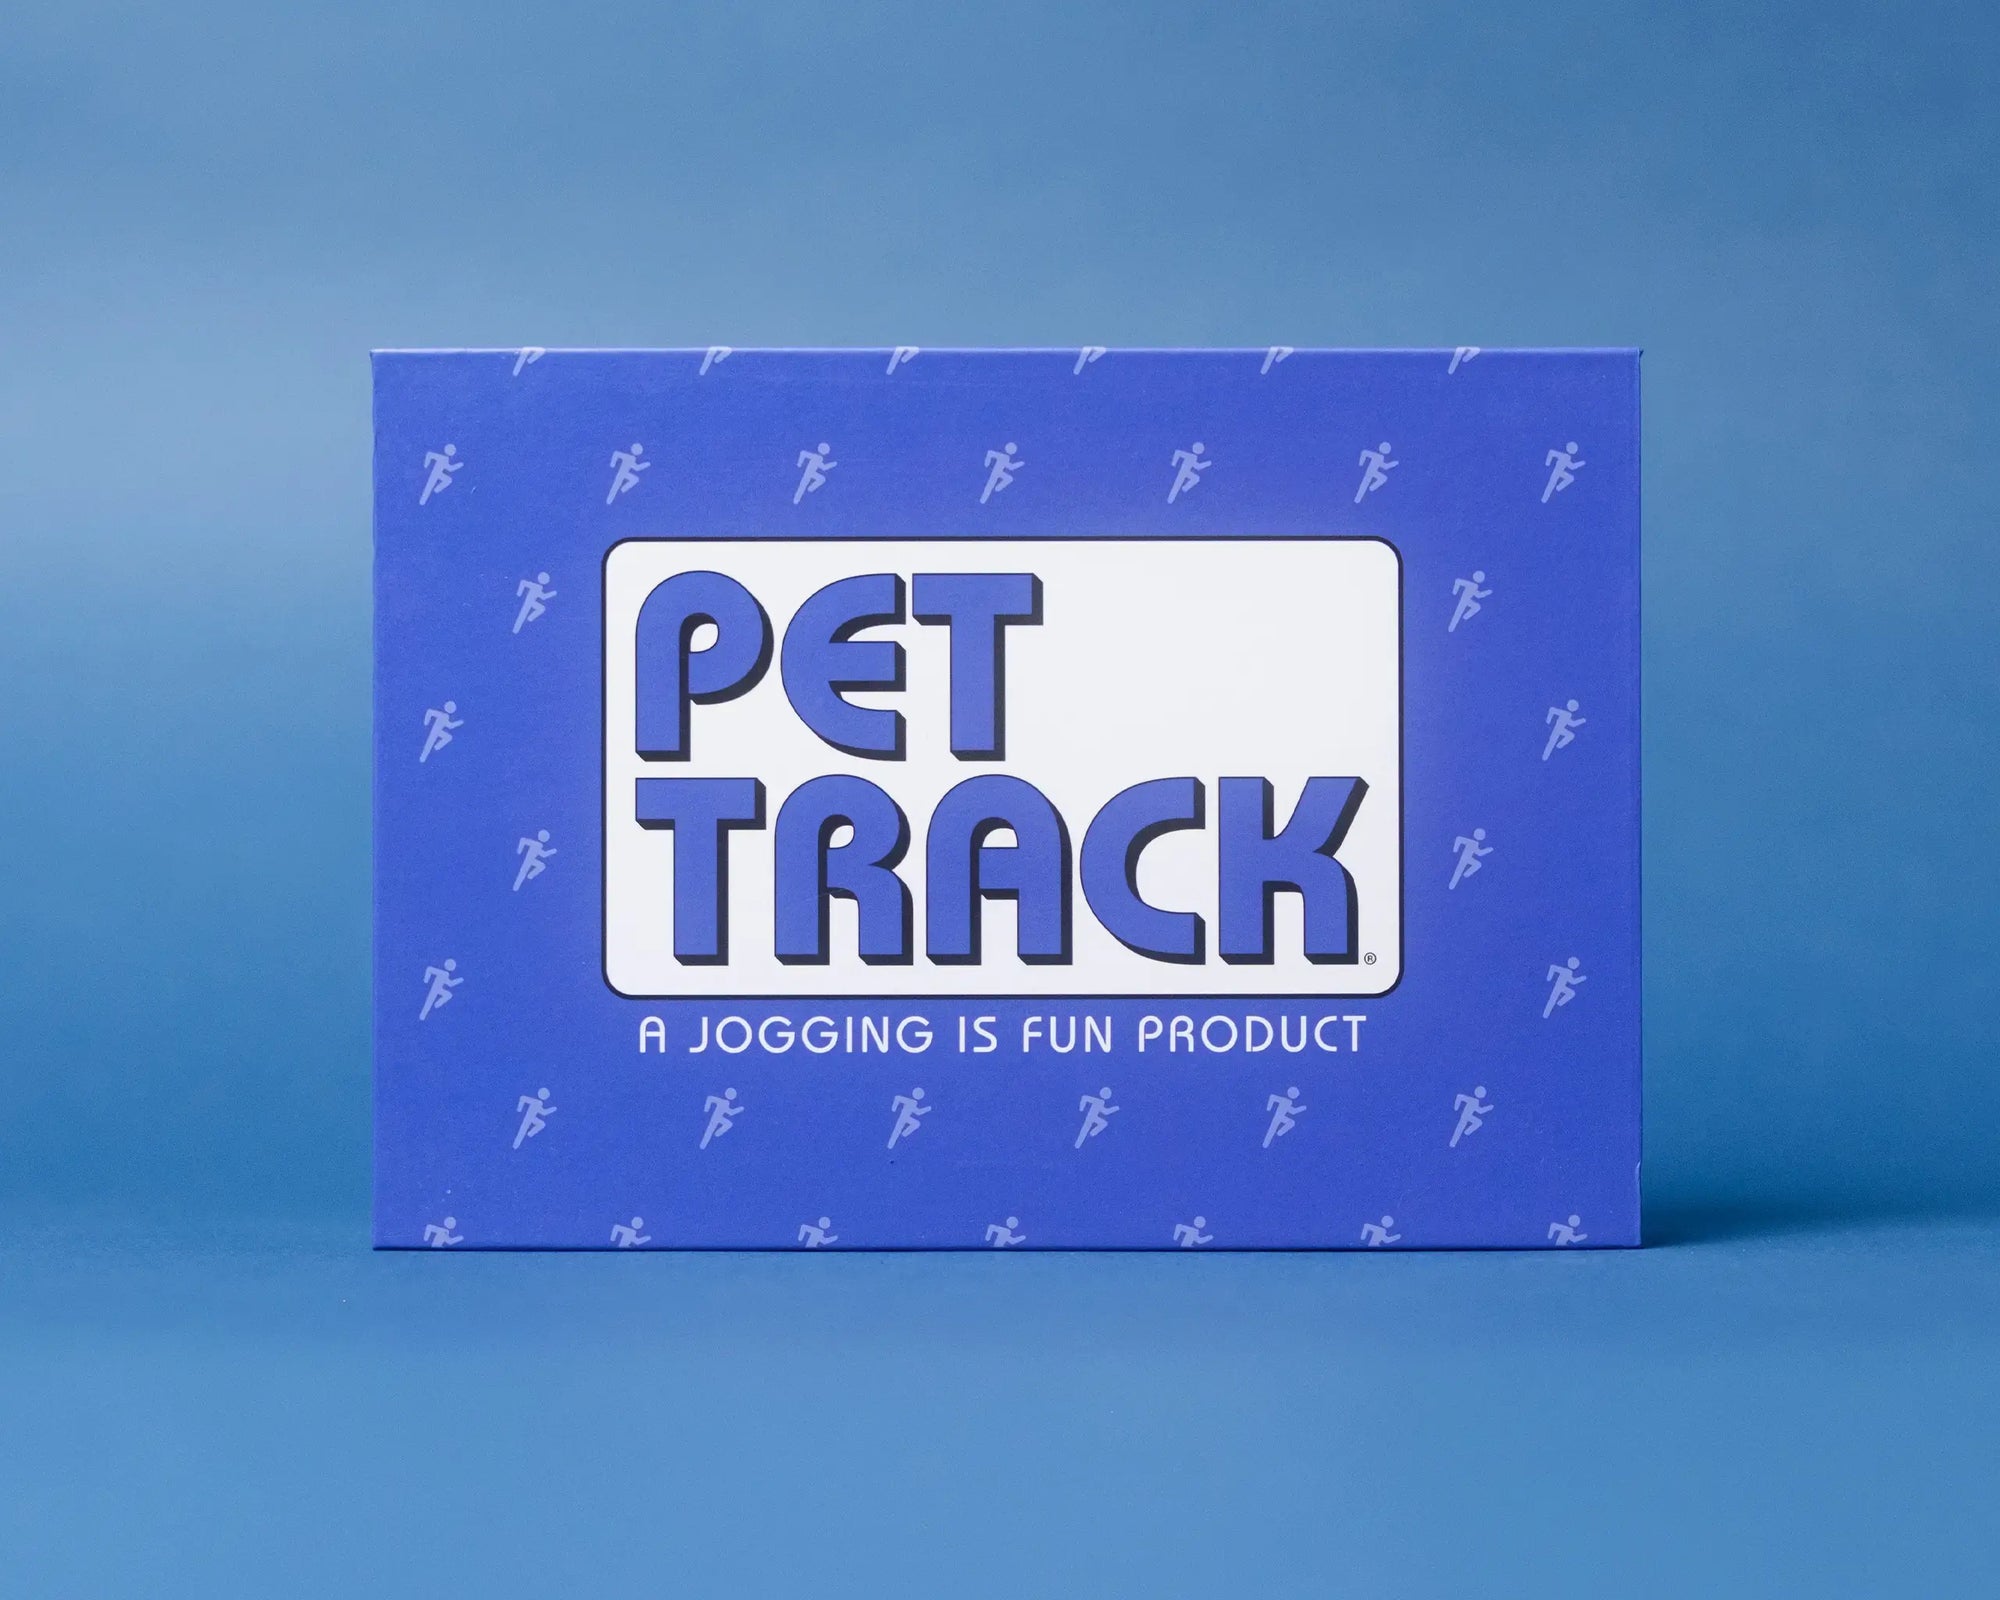 Premium Blue Pet Track®